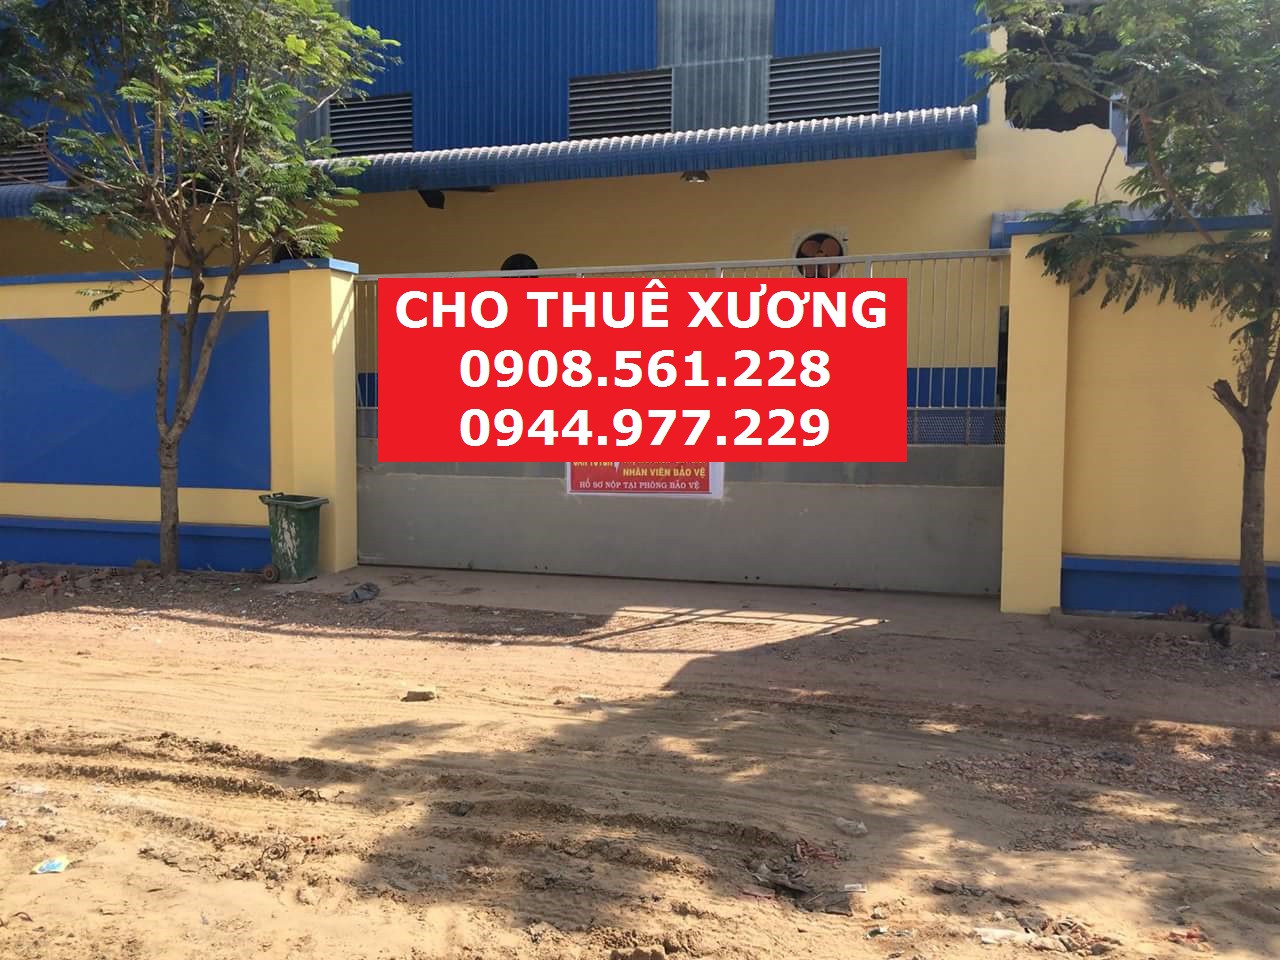 Cho thuê nhà xưởng ngay cầu Dưa đường Lê Văn Khương. DTKV 2200m2, DTXD 1000m2, giá 50tr/tháng